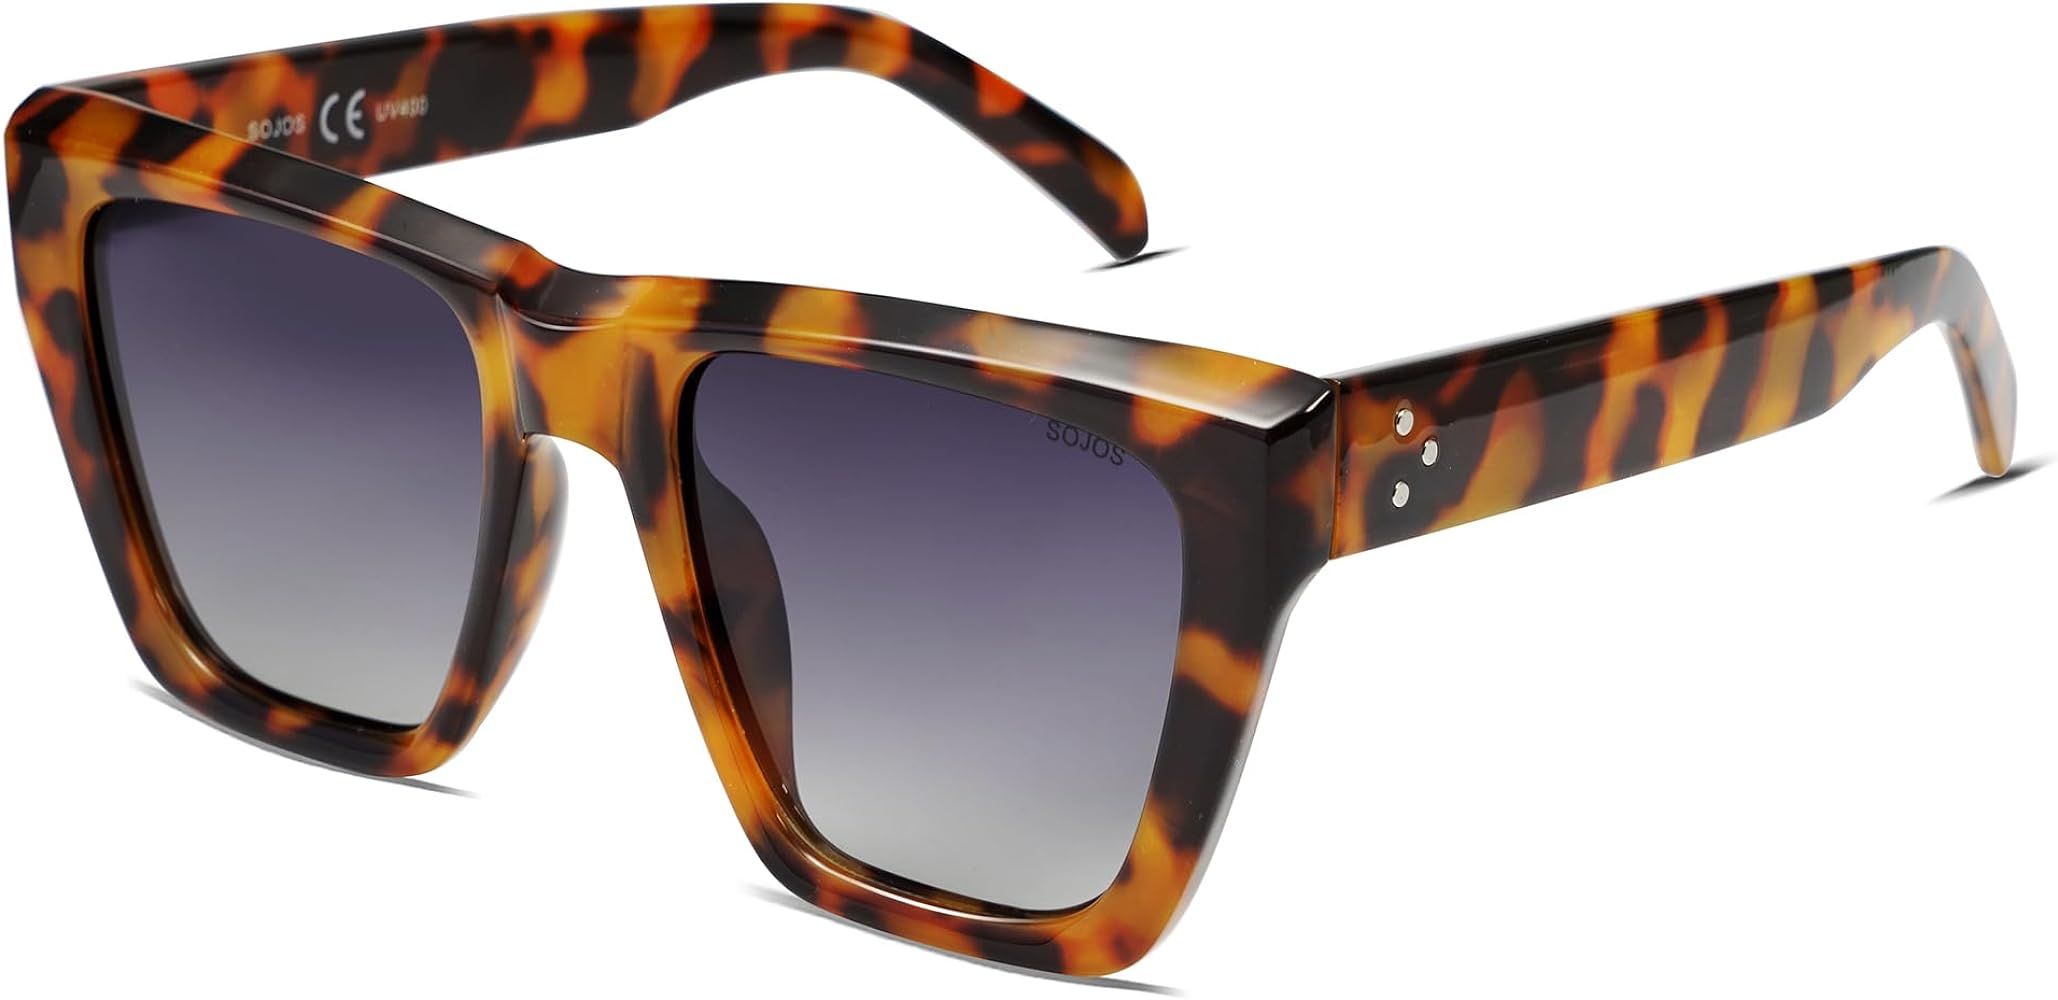 SOJOS Vintage Oversized Square Cat Eye Polarized Sunglasses for Women Trendy Fashion Cateye Style... | Amazon (US)